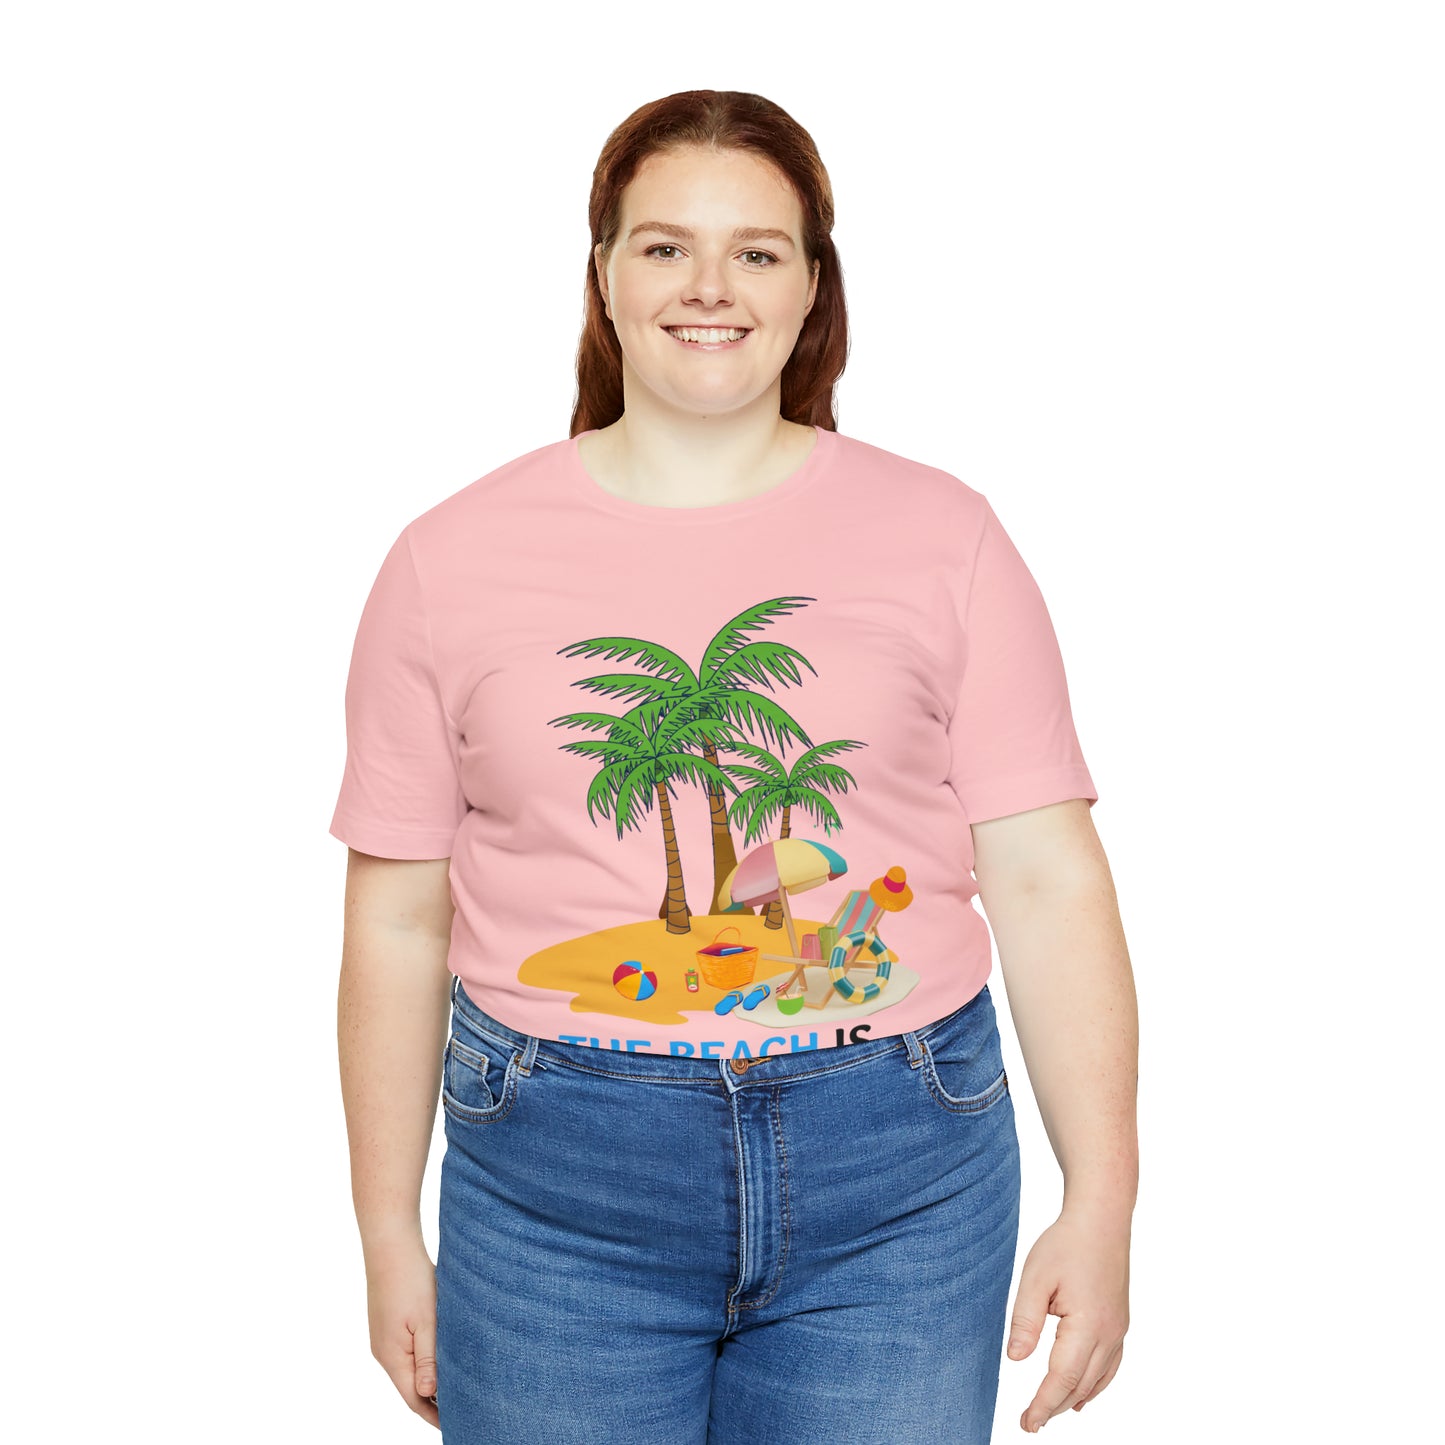 Beach shirt, The Beach is my happy place shirt, Beach t-shirt, Summer shirt, Beachwear, Beach fashion, Stylish beach apparel